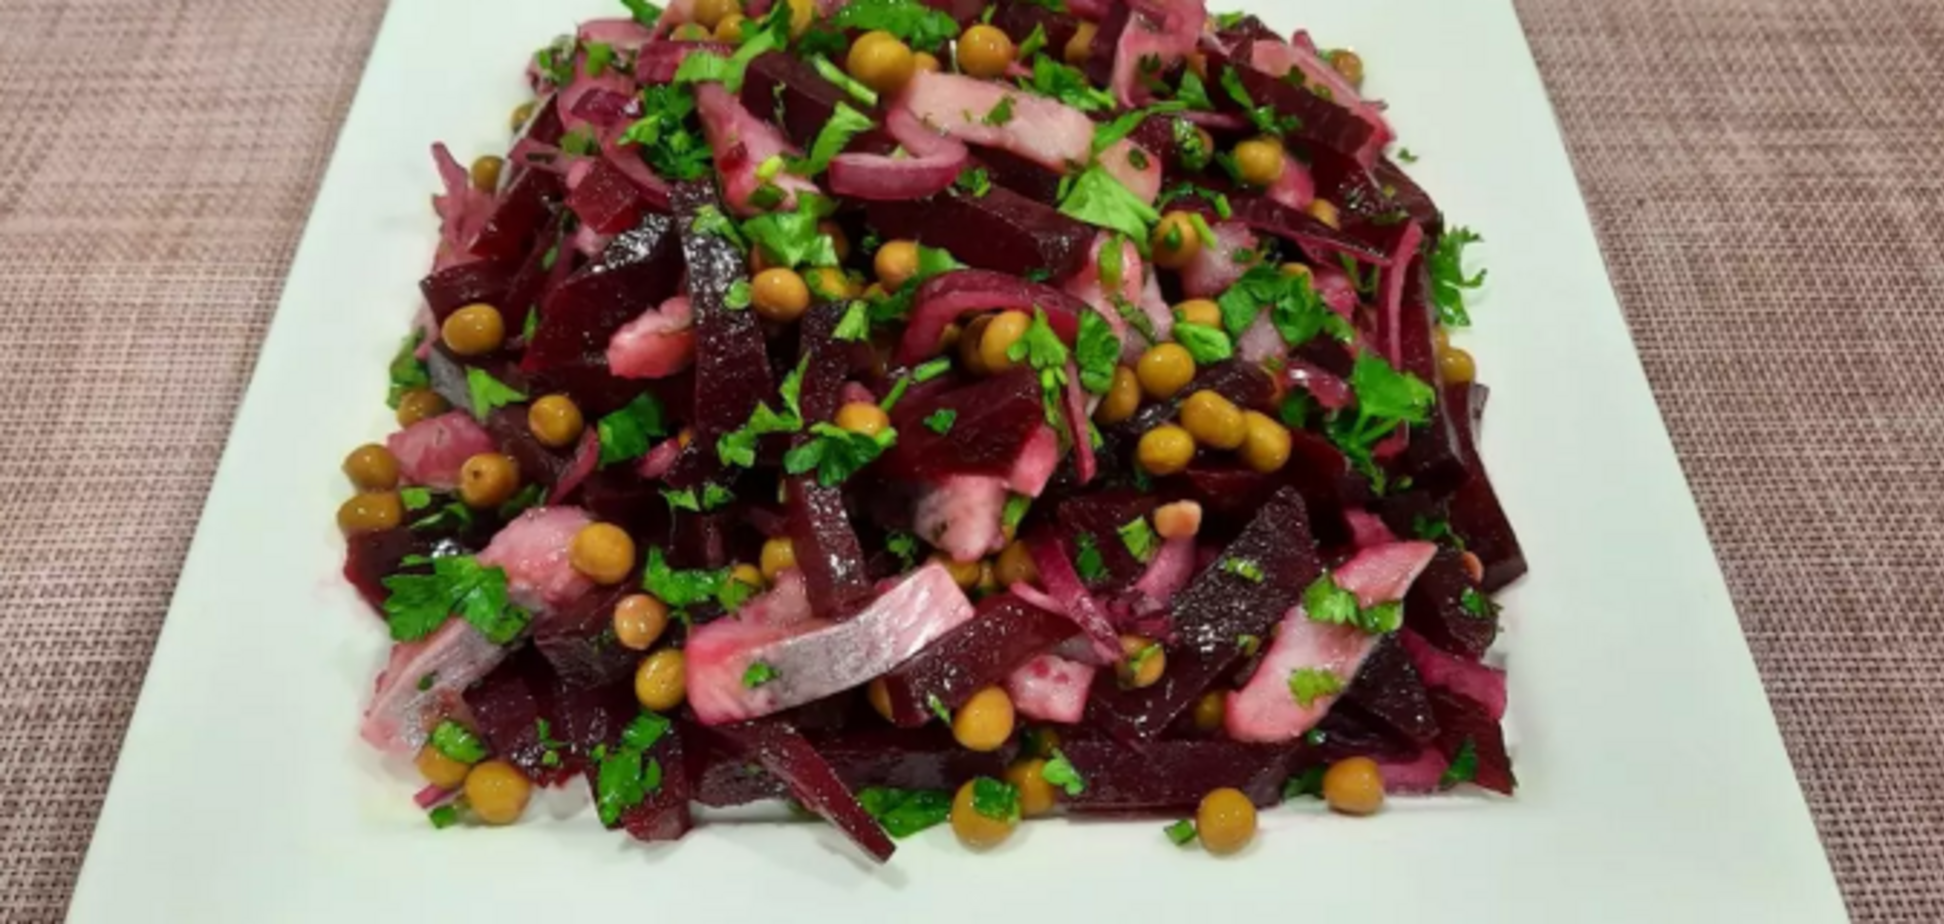 Вкуснее, чем 'Шуба': бюджетный салат из сельди по рецепту Эктора Хименеса-Браво